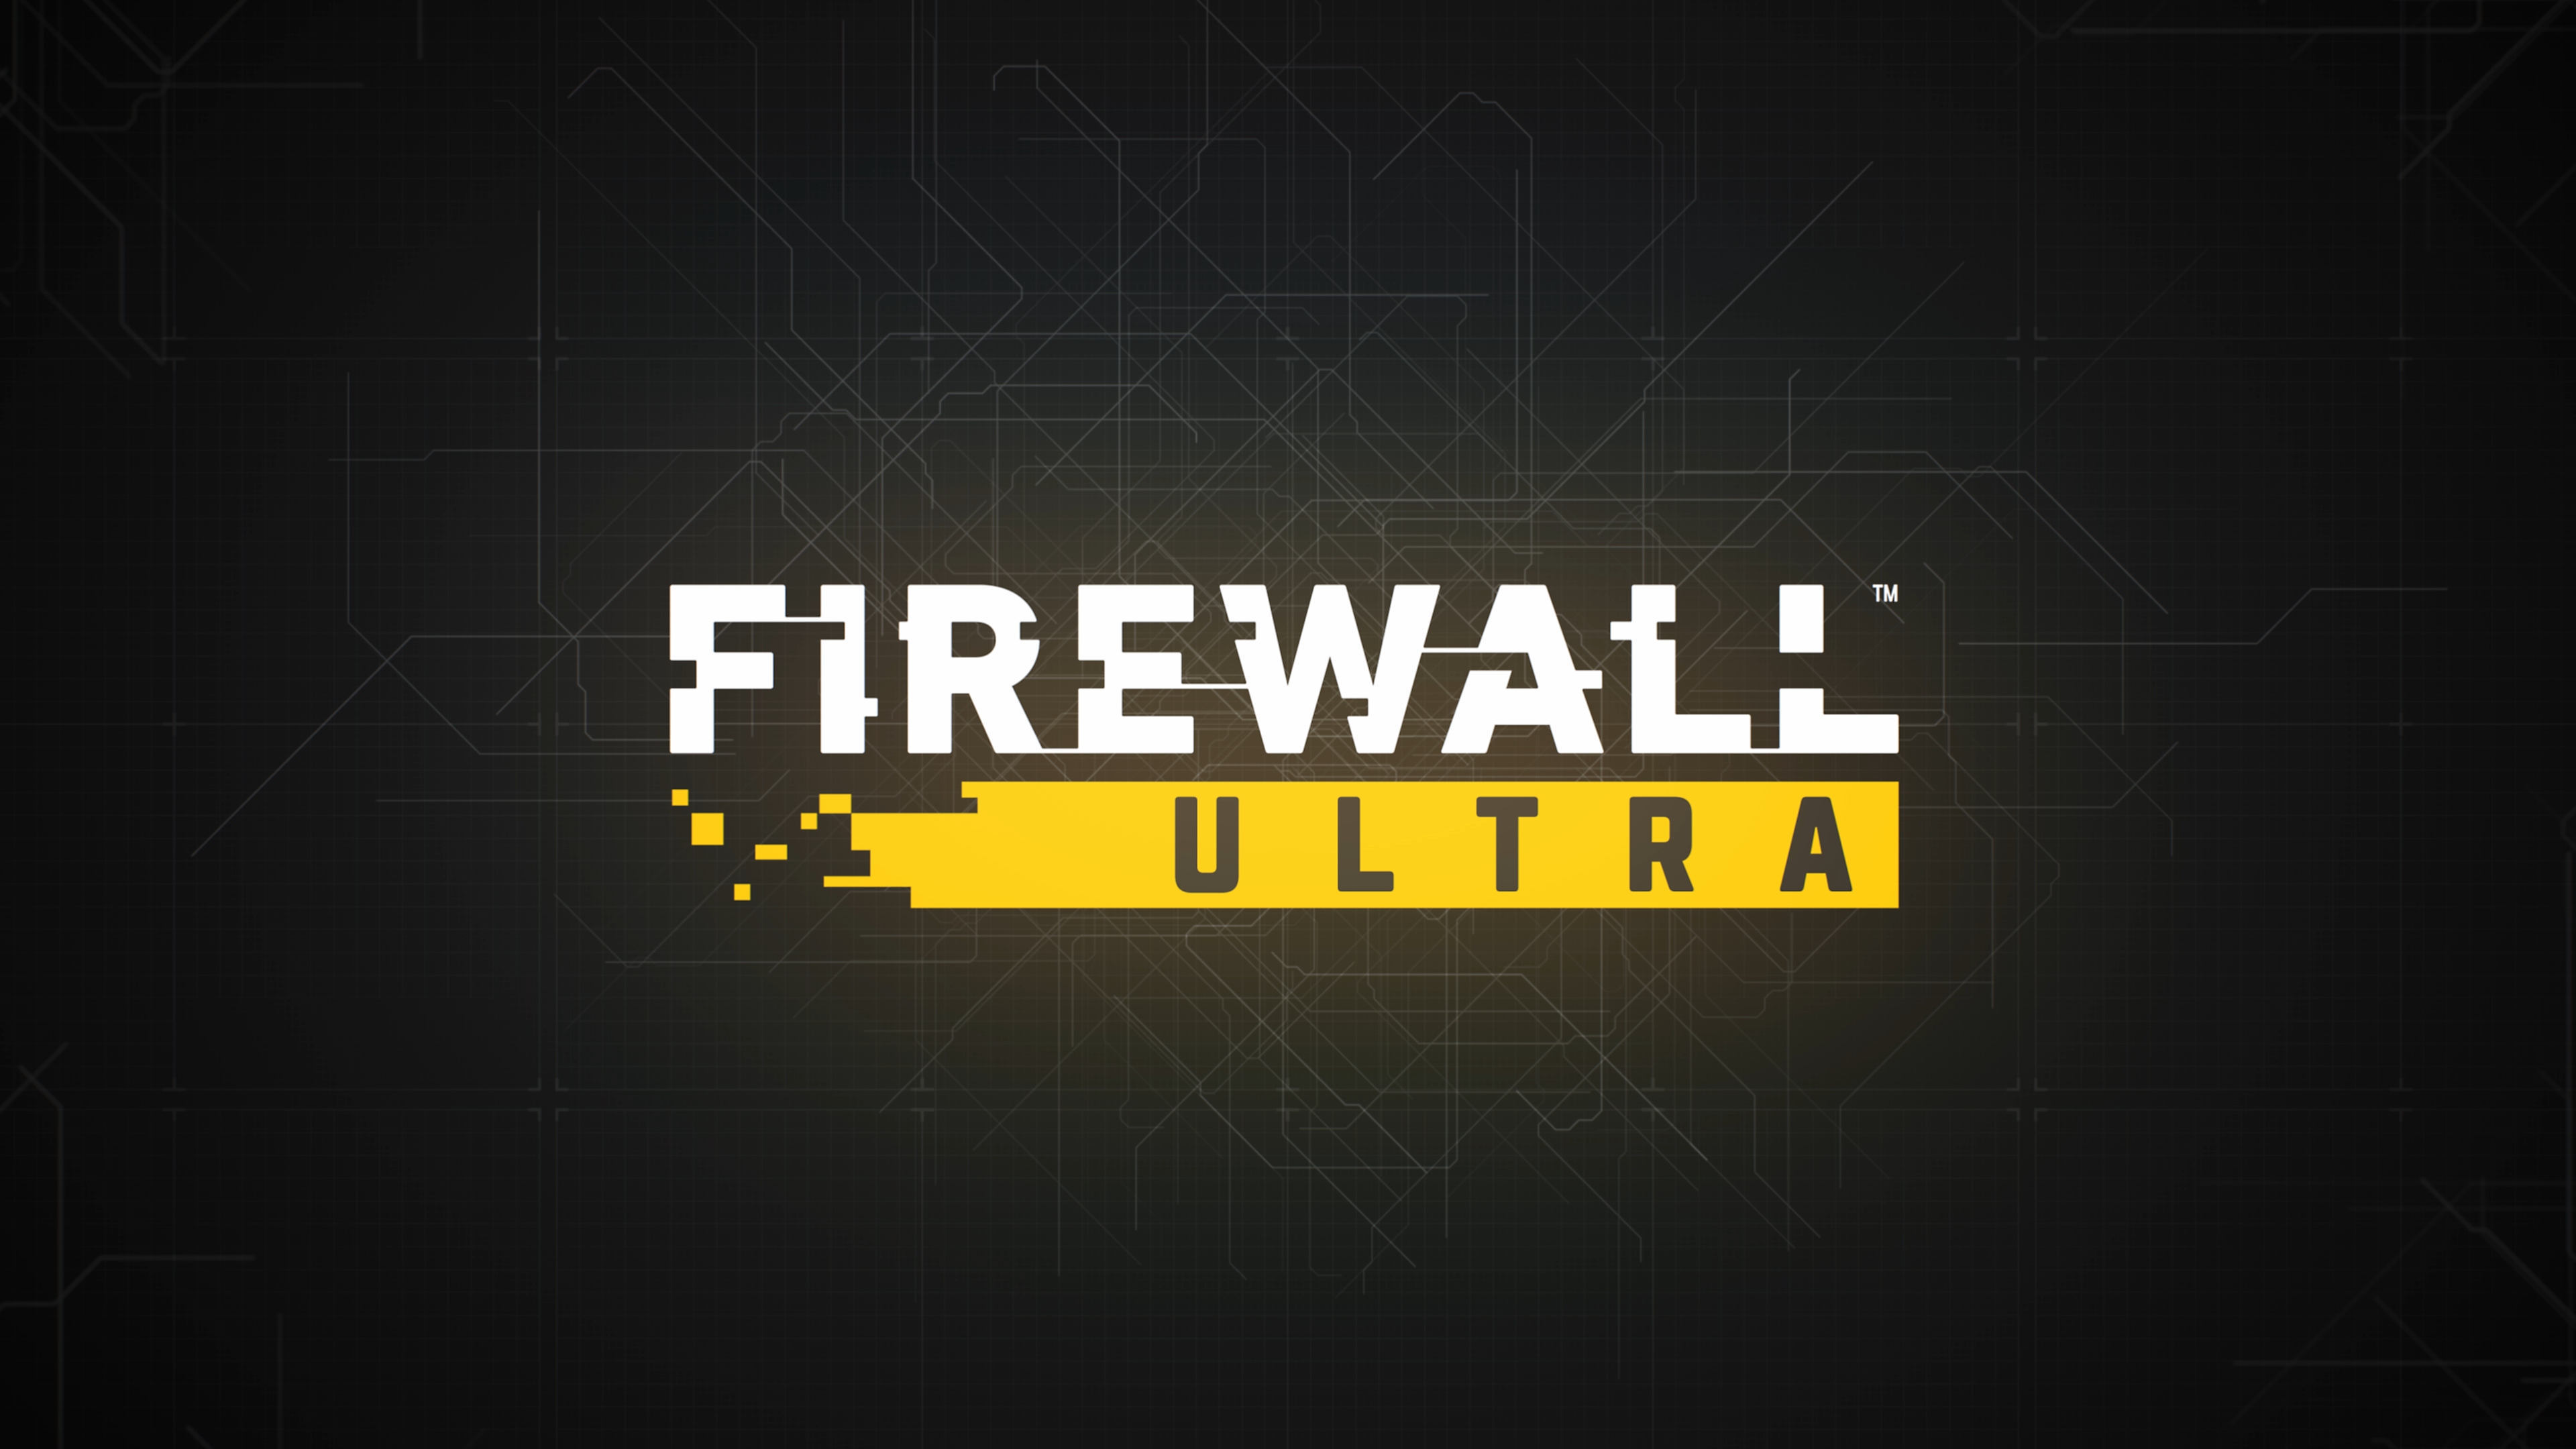 firewall ultra – skjermbilde – hovedillustrasjon